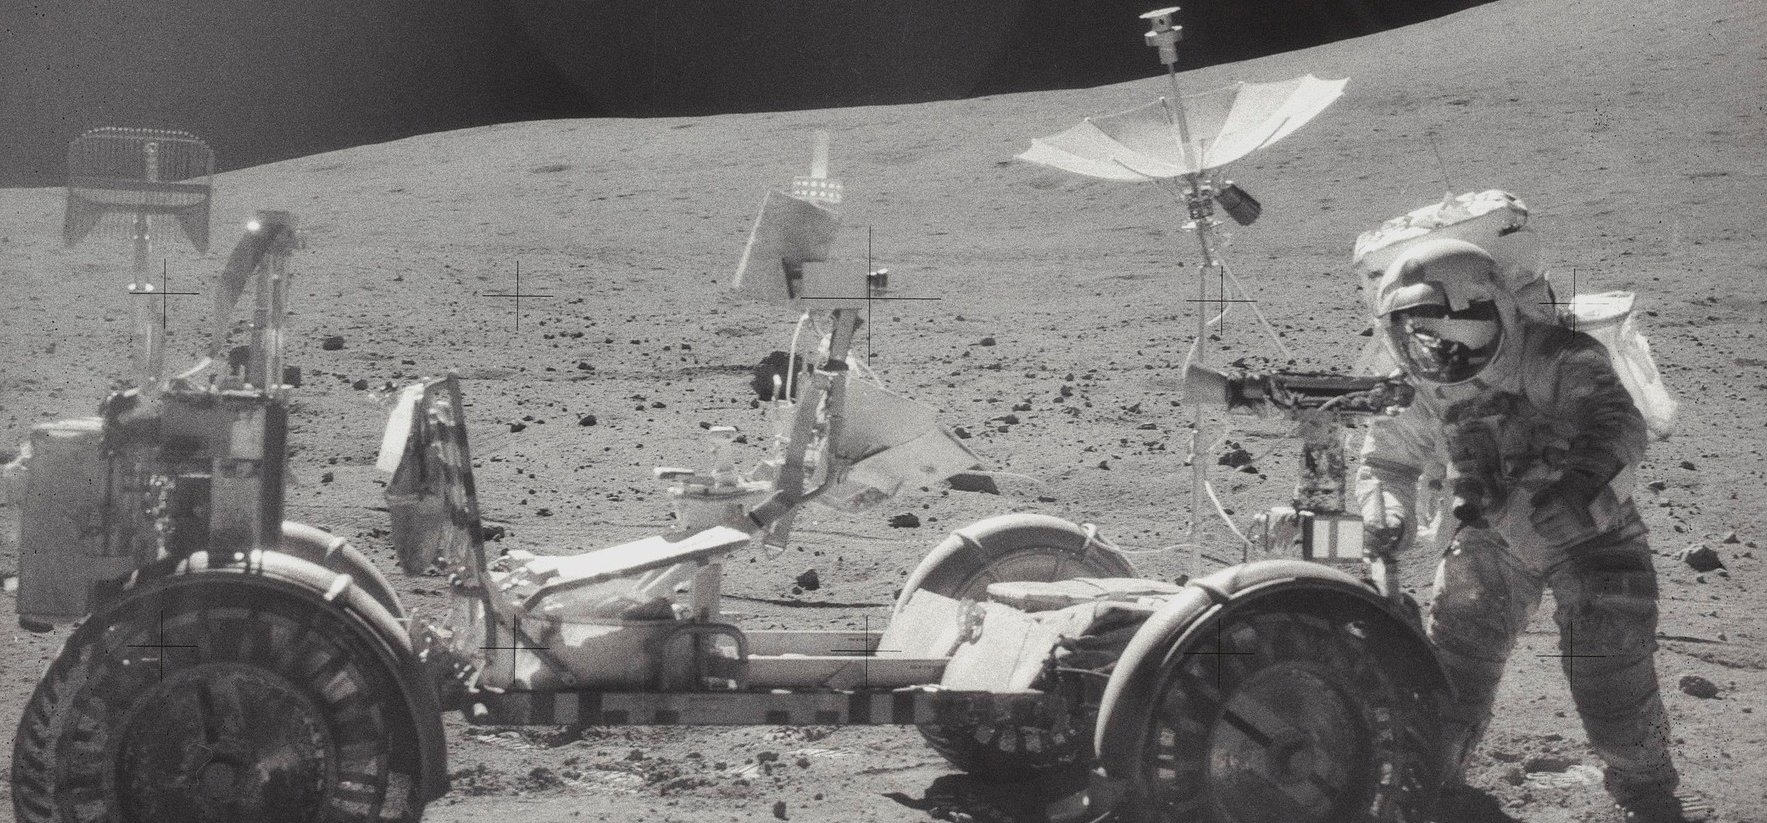 49 éve ezen a napon történt az Apollo program utolsó Holdra szállása – fotók